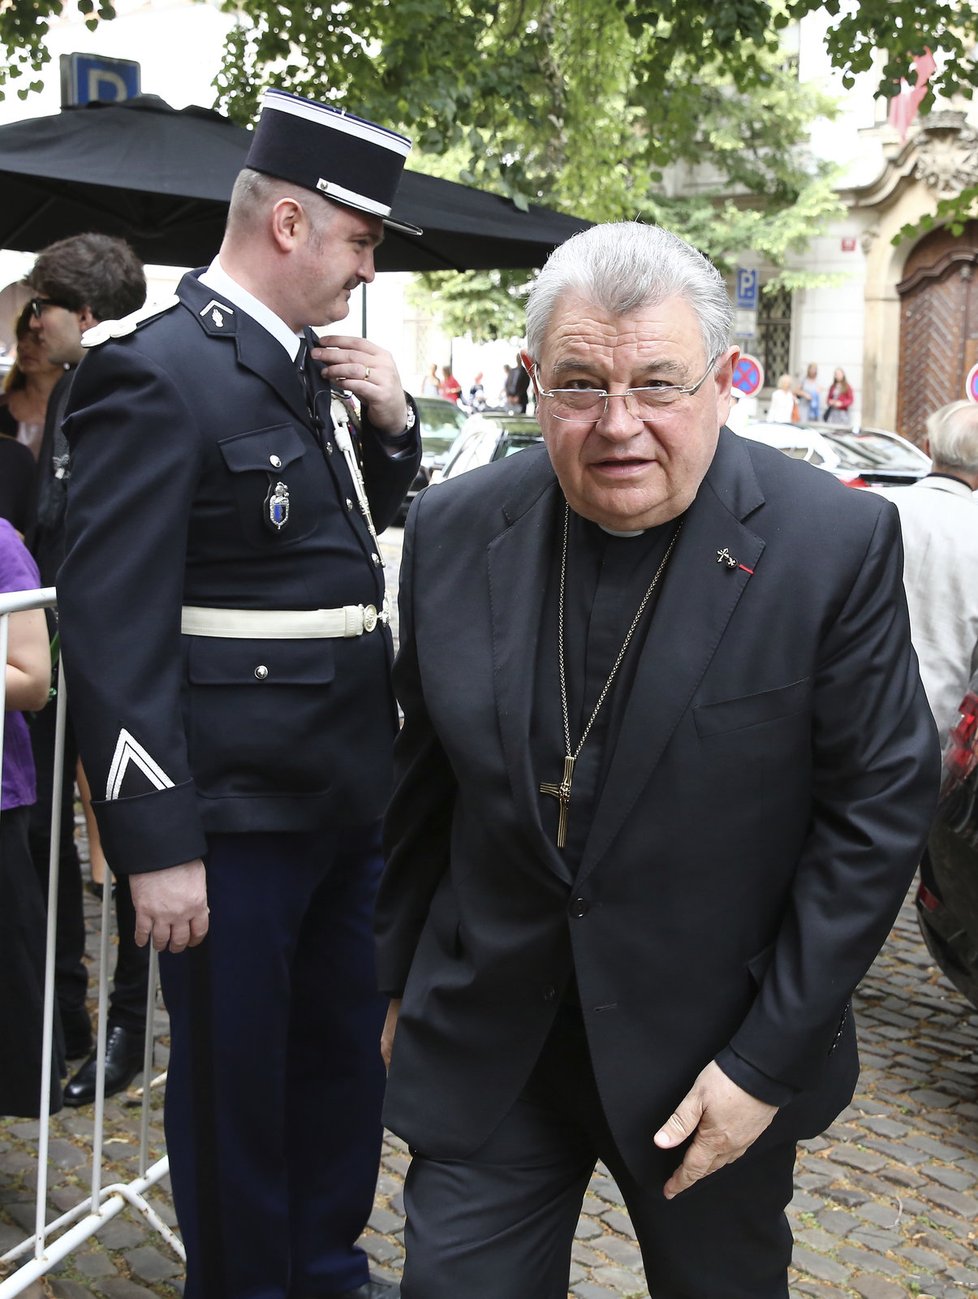 Kardinál Duka u francouzské ambasády v Praze